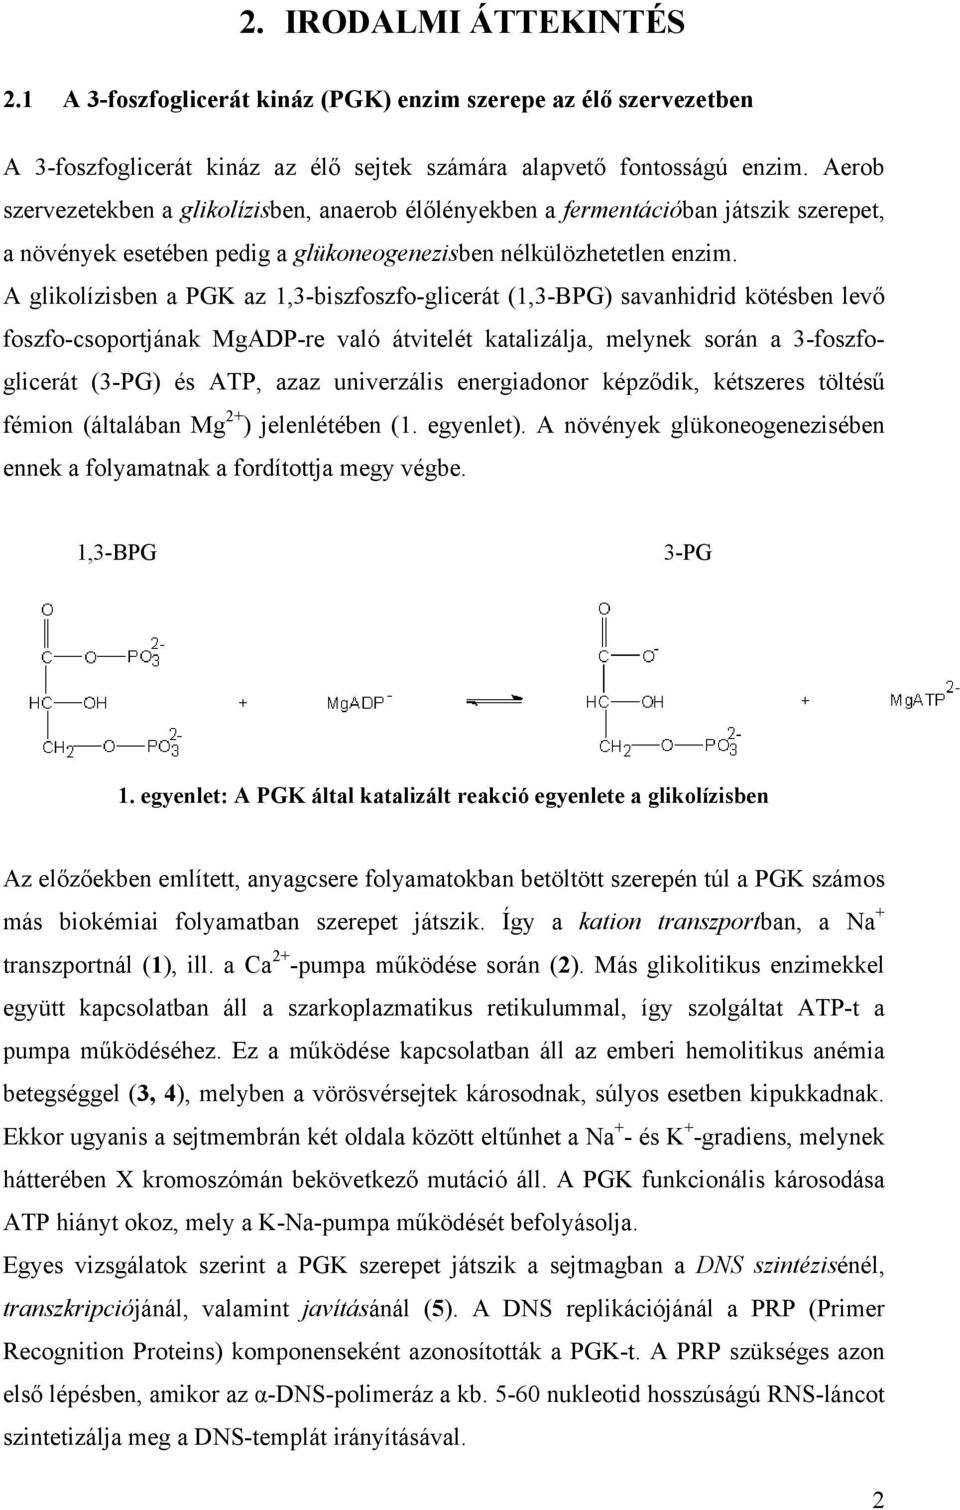 A glikolízisben a PGK az 1,3-biszfoszfo-glicerát (1,3-BPG) savanhidrid kötésben levő foszfo-csoportjának MgADP-re való átvitelét katalizálja, melynek során a 3-foszfoglicerát (3-PG) és ATP, azaz